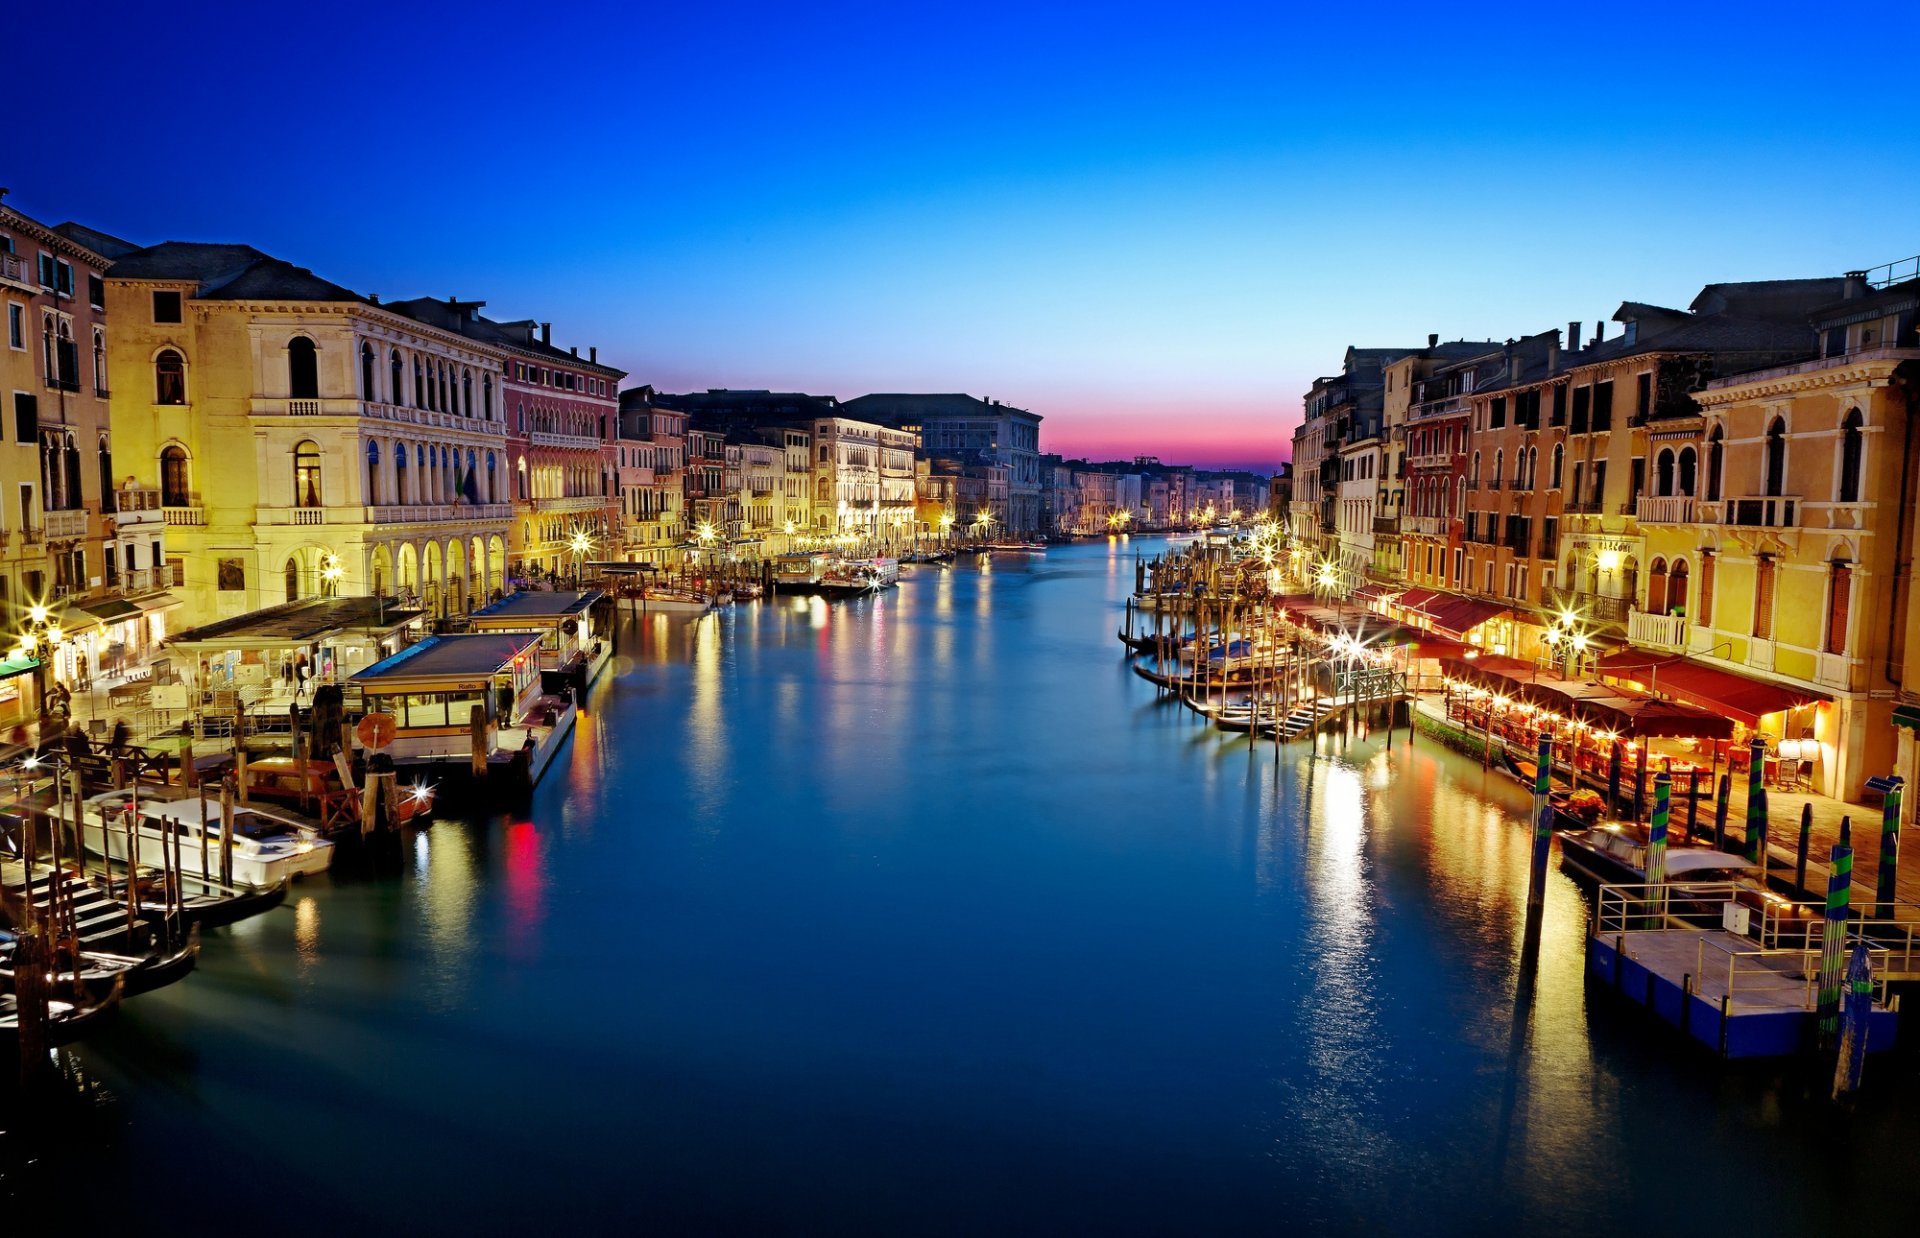 венеция италия canal grande гранд-канал город вечер закат дома здания гондолы лодки море вода отражение освещение